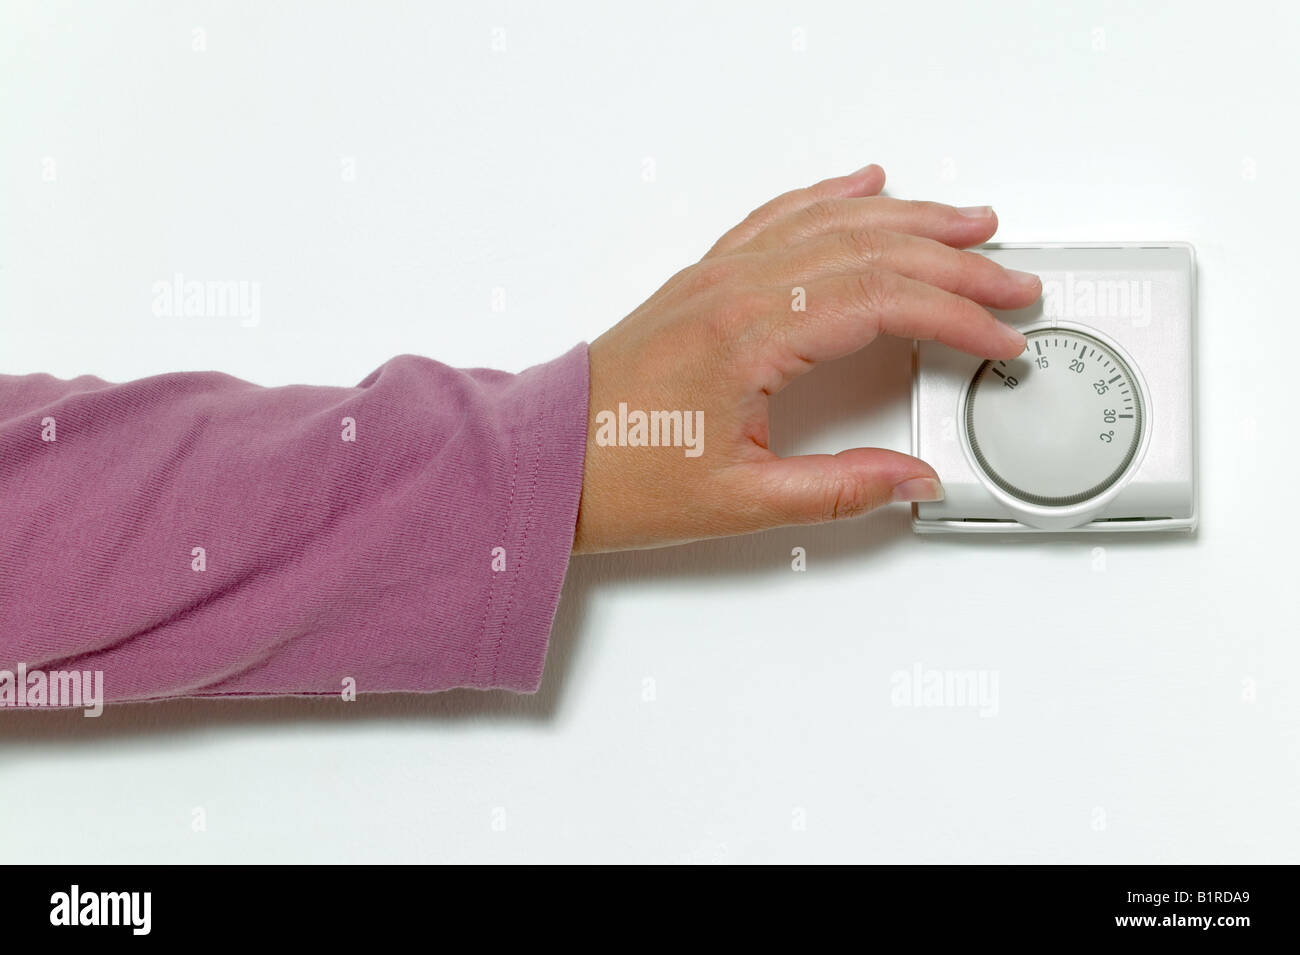 La main de femme de baisser le thermostat sur une température Banque D'Images